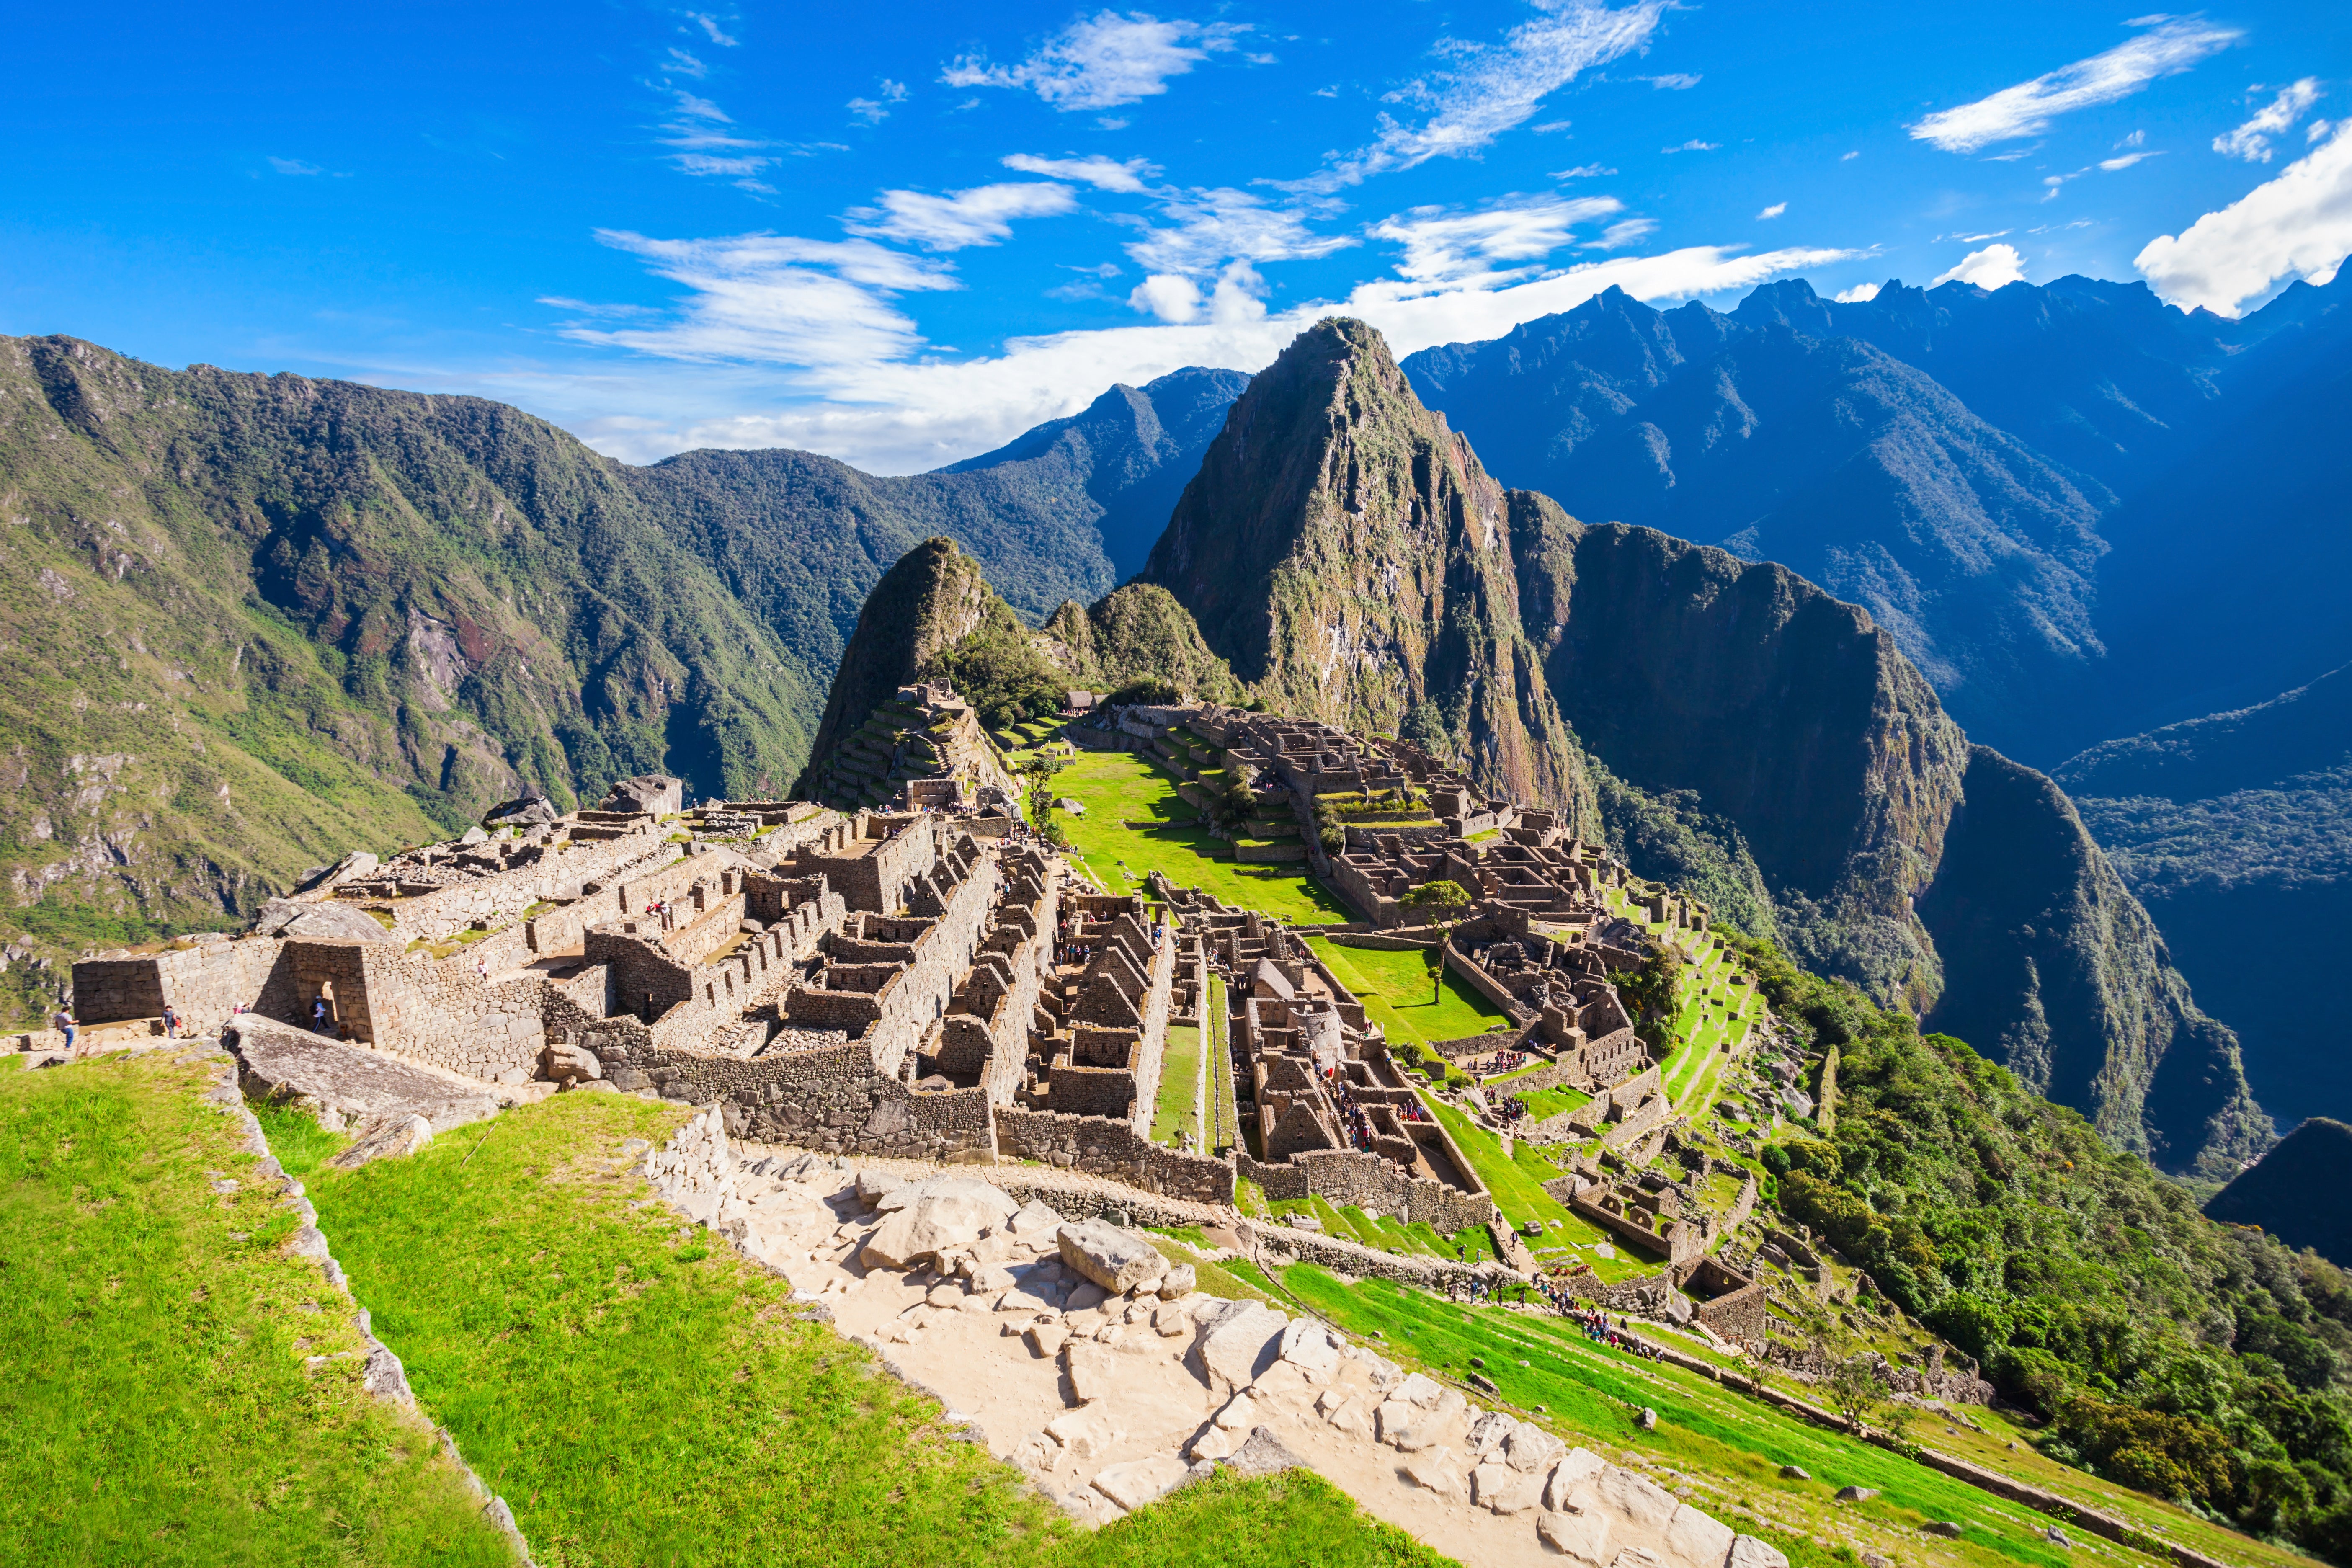 The Incan Citadel of Machu Picchu, Peru